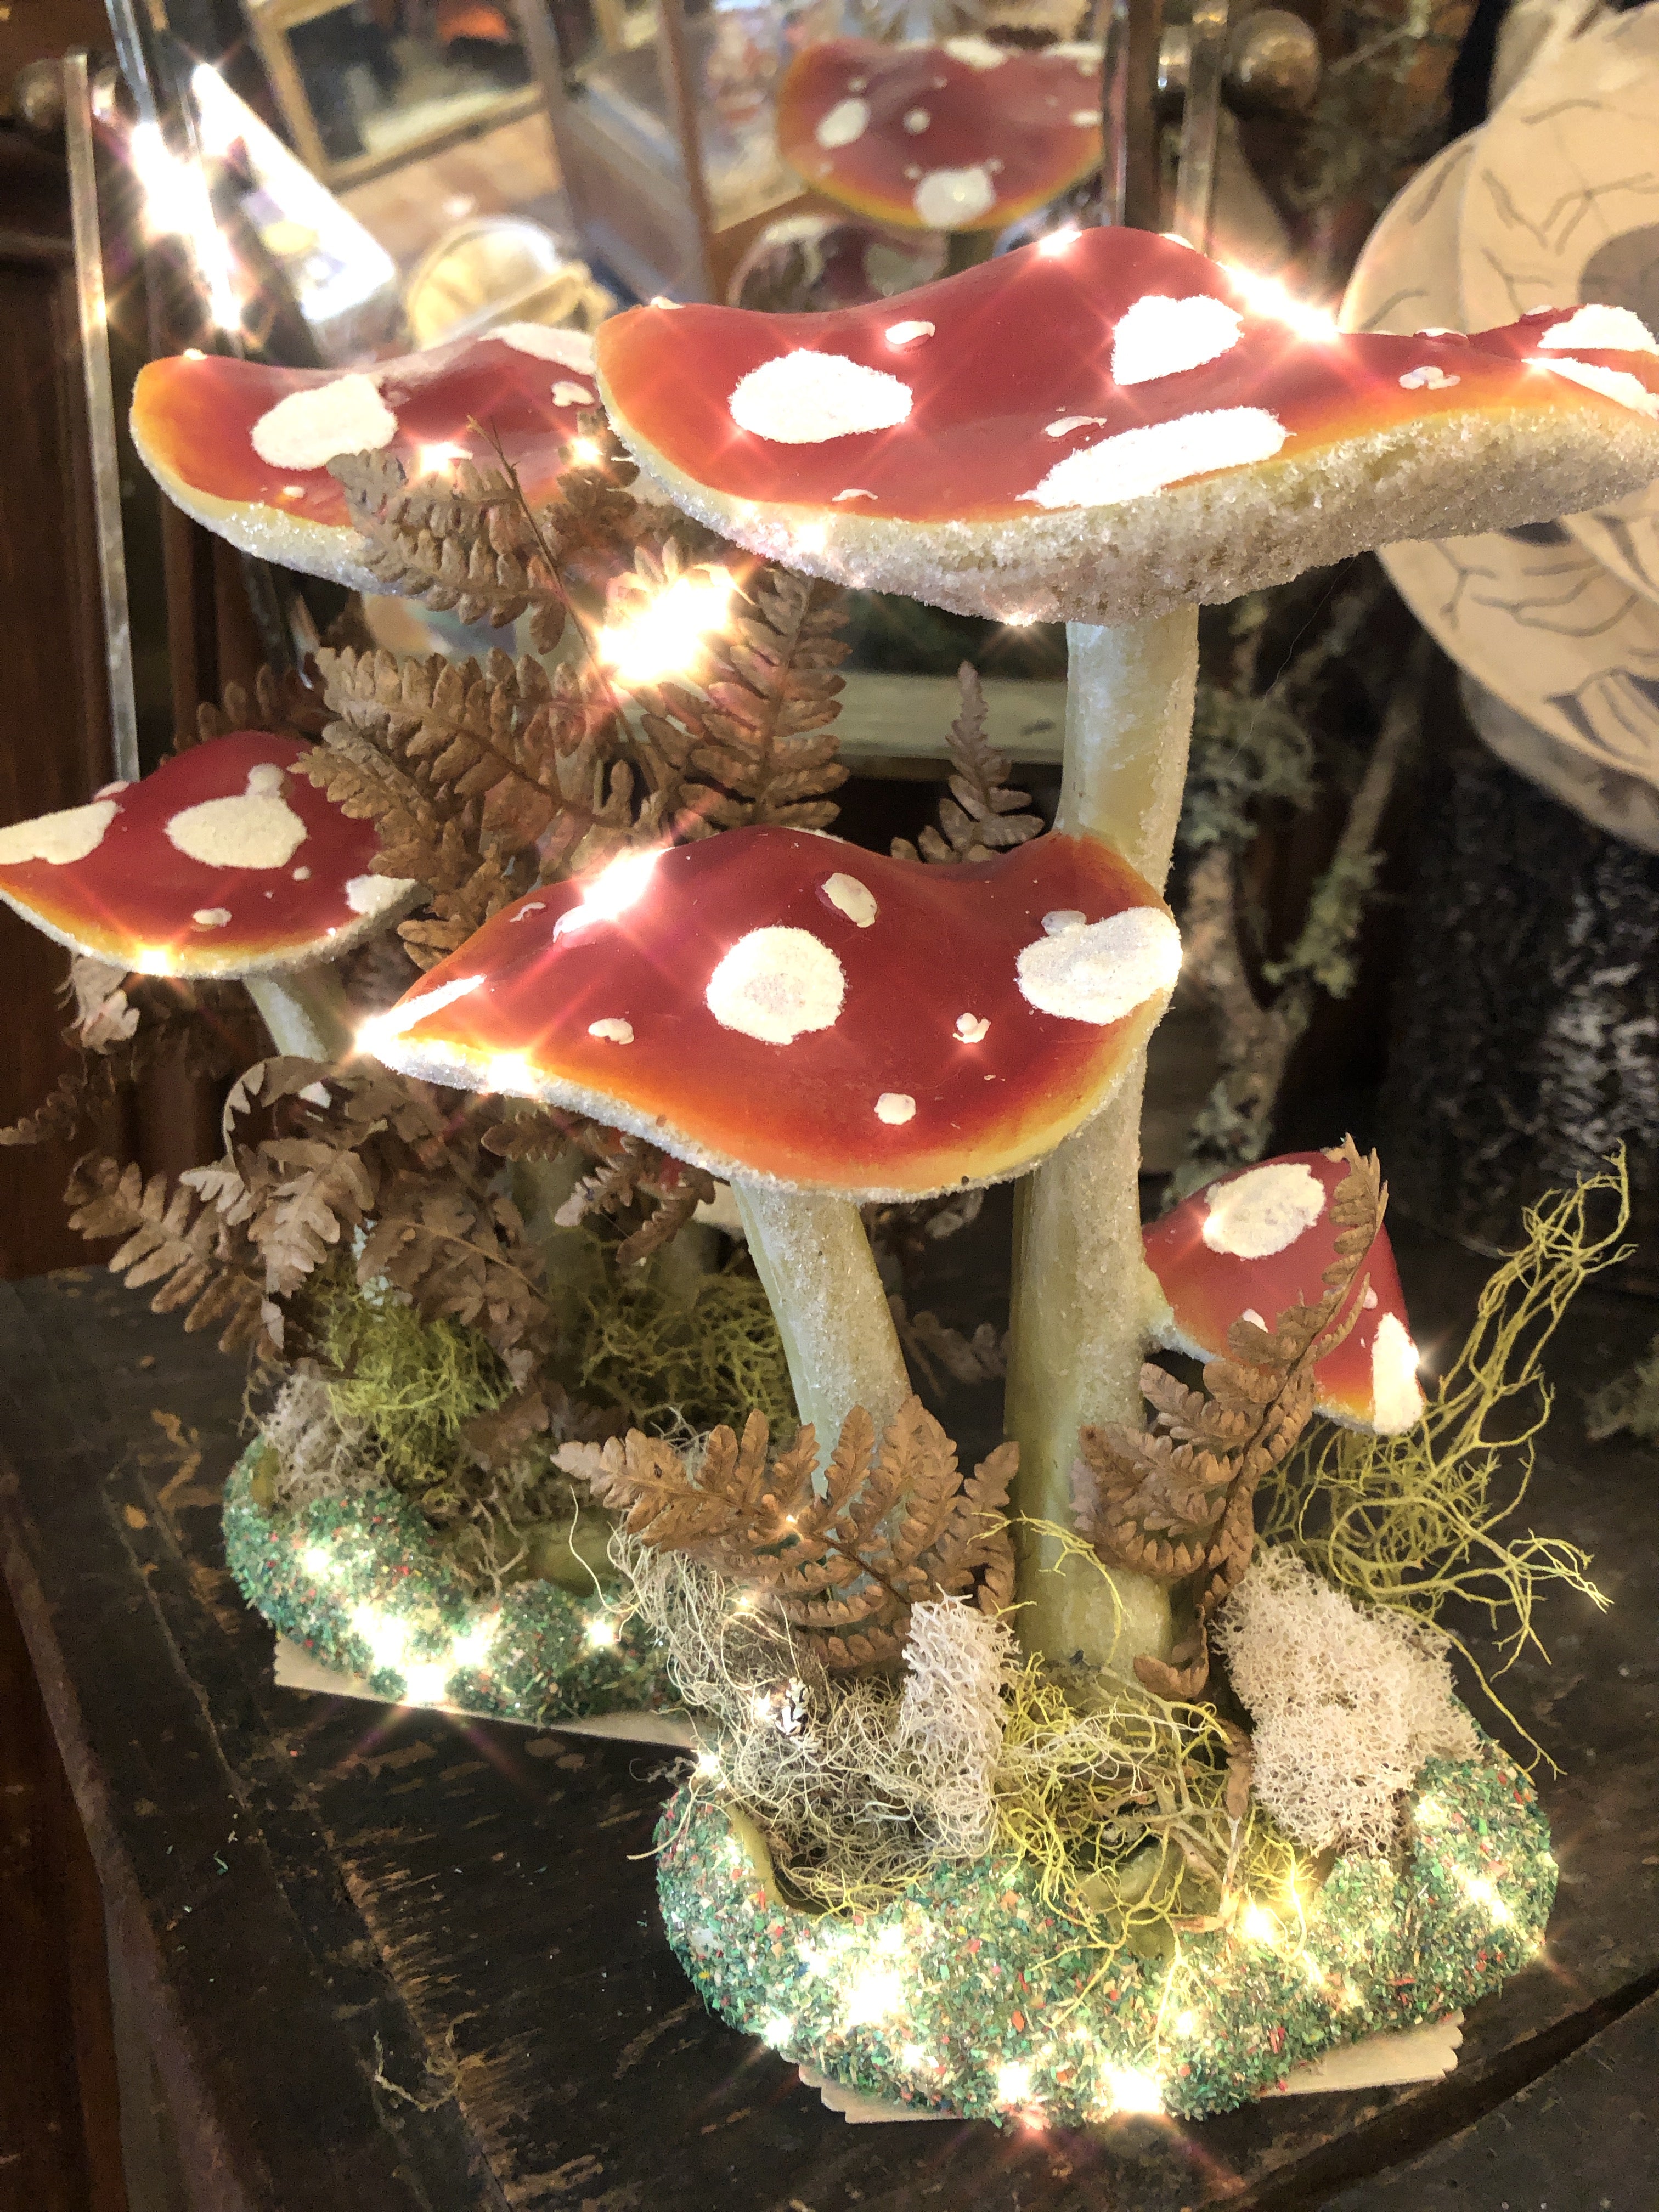 Glittery Display Mushroom Group